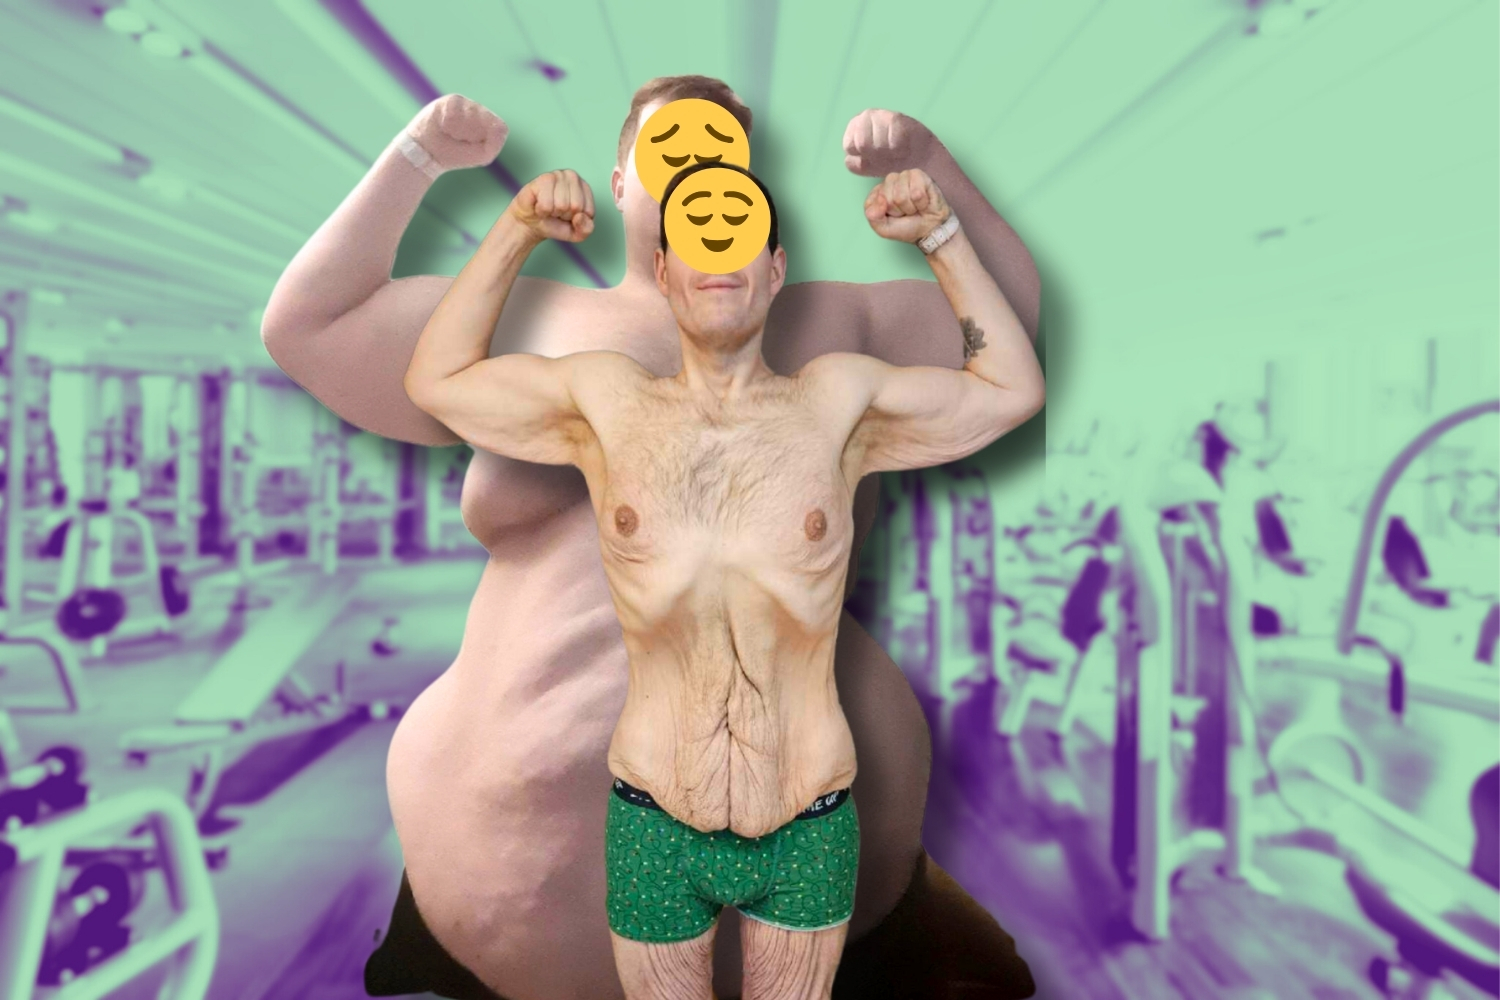 Un hombre revela el inesperado efecto secundario de su asombrosa transformación corporal de 140 kg